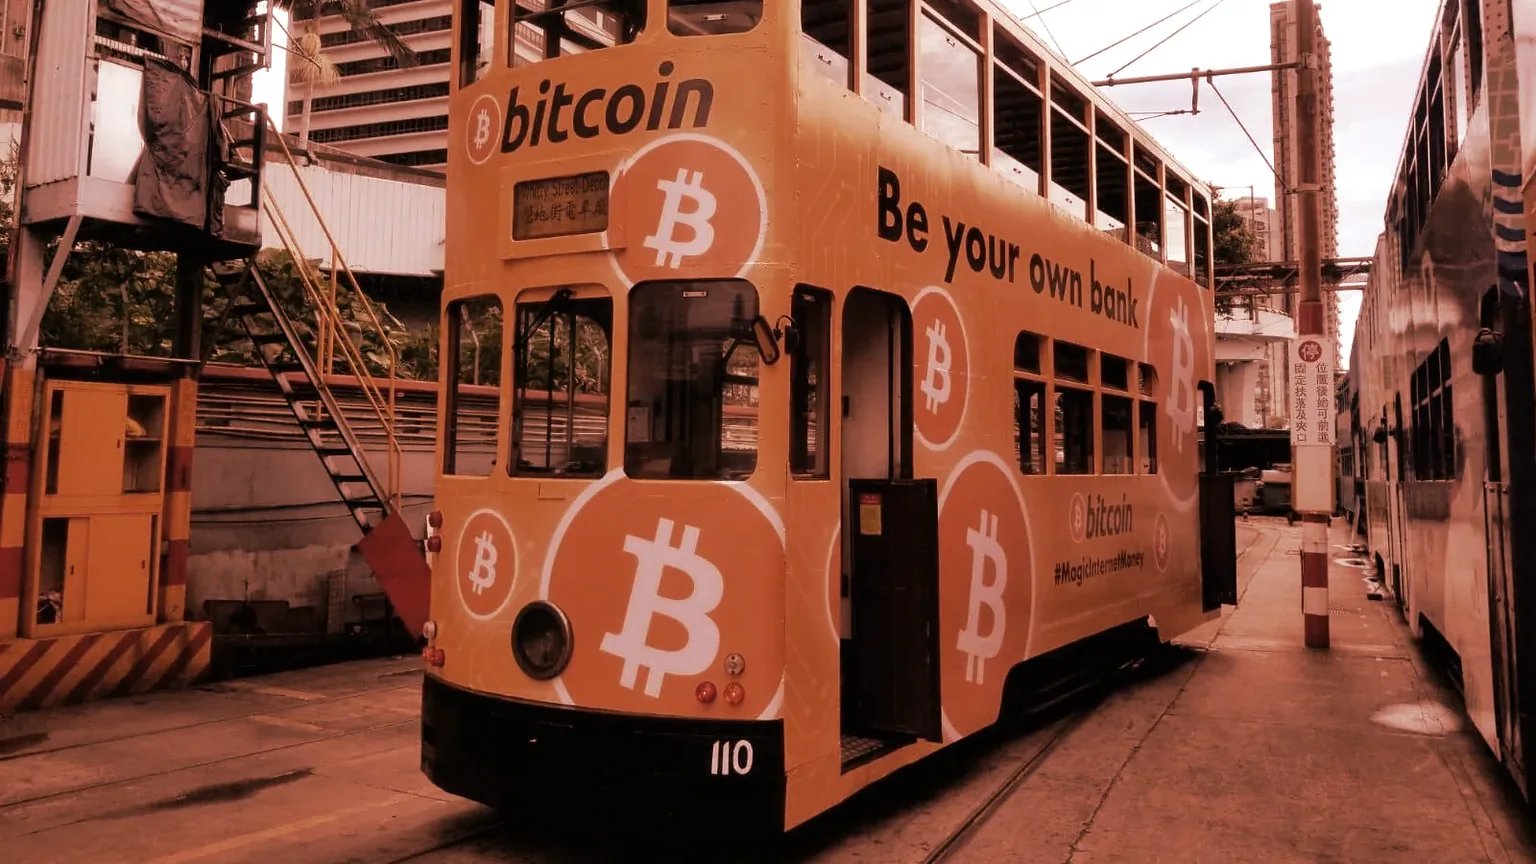 Bitcoin branded trams will parade Hong Kong. Image: BAHK